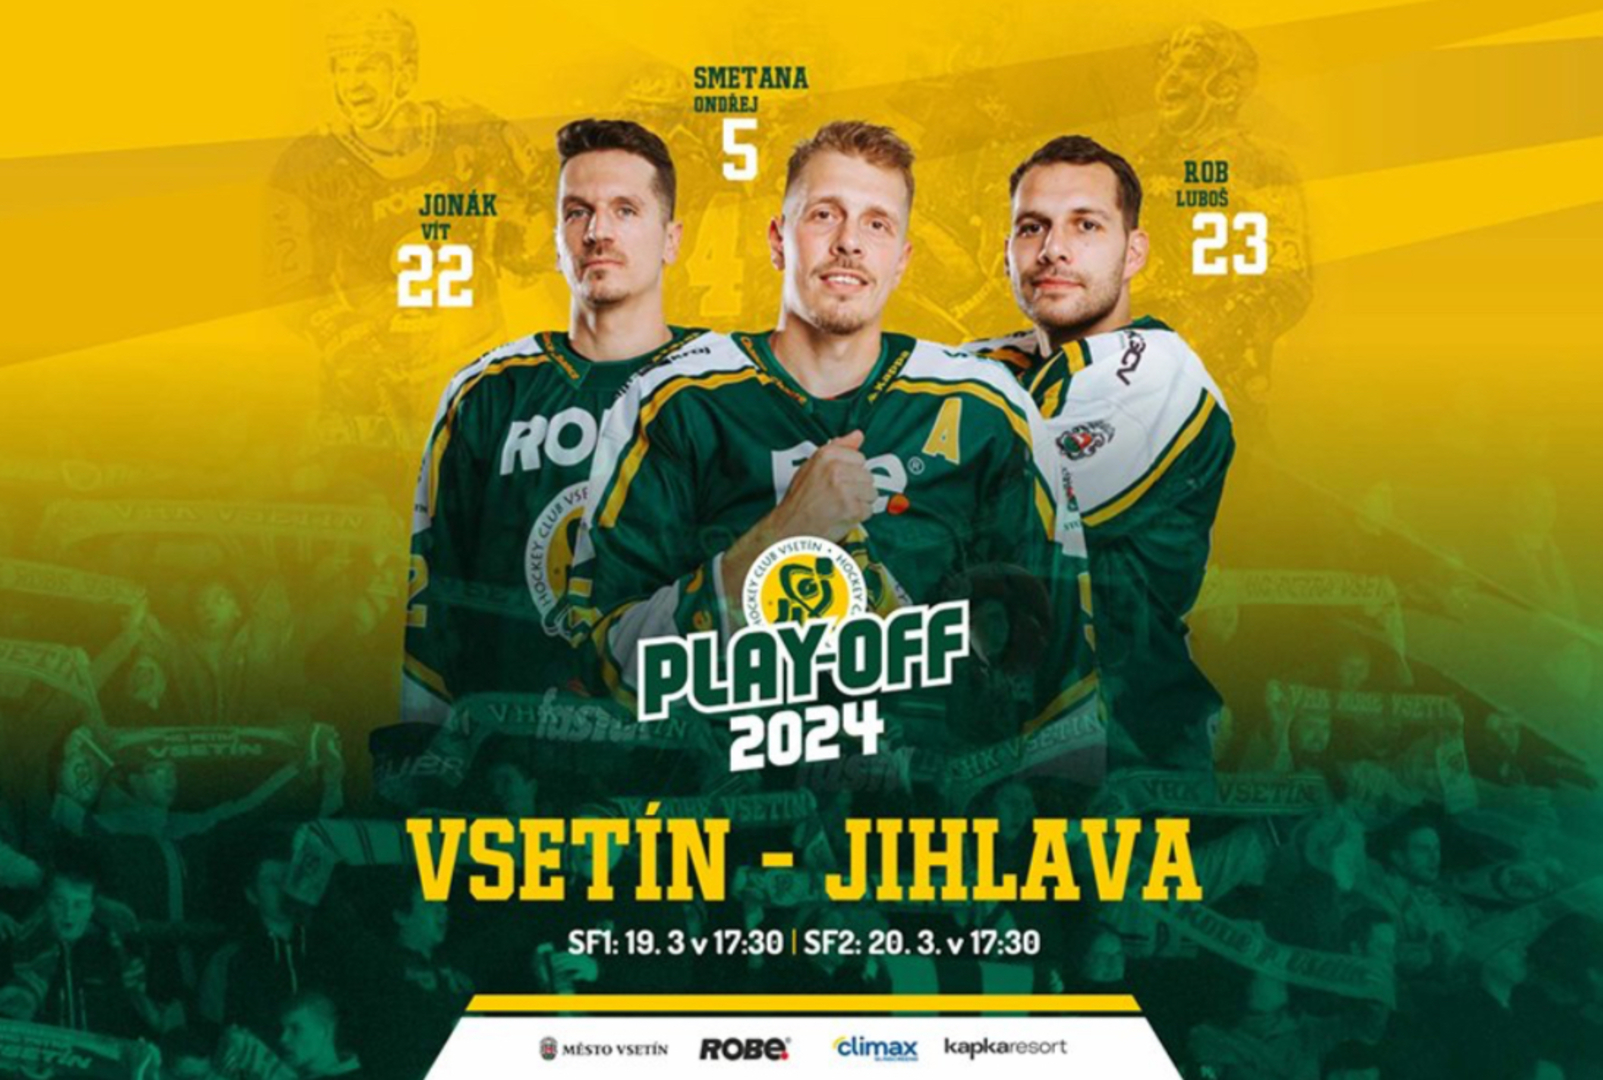 Plakát Startuje hokejové semifinále Vsetín - Jihlava